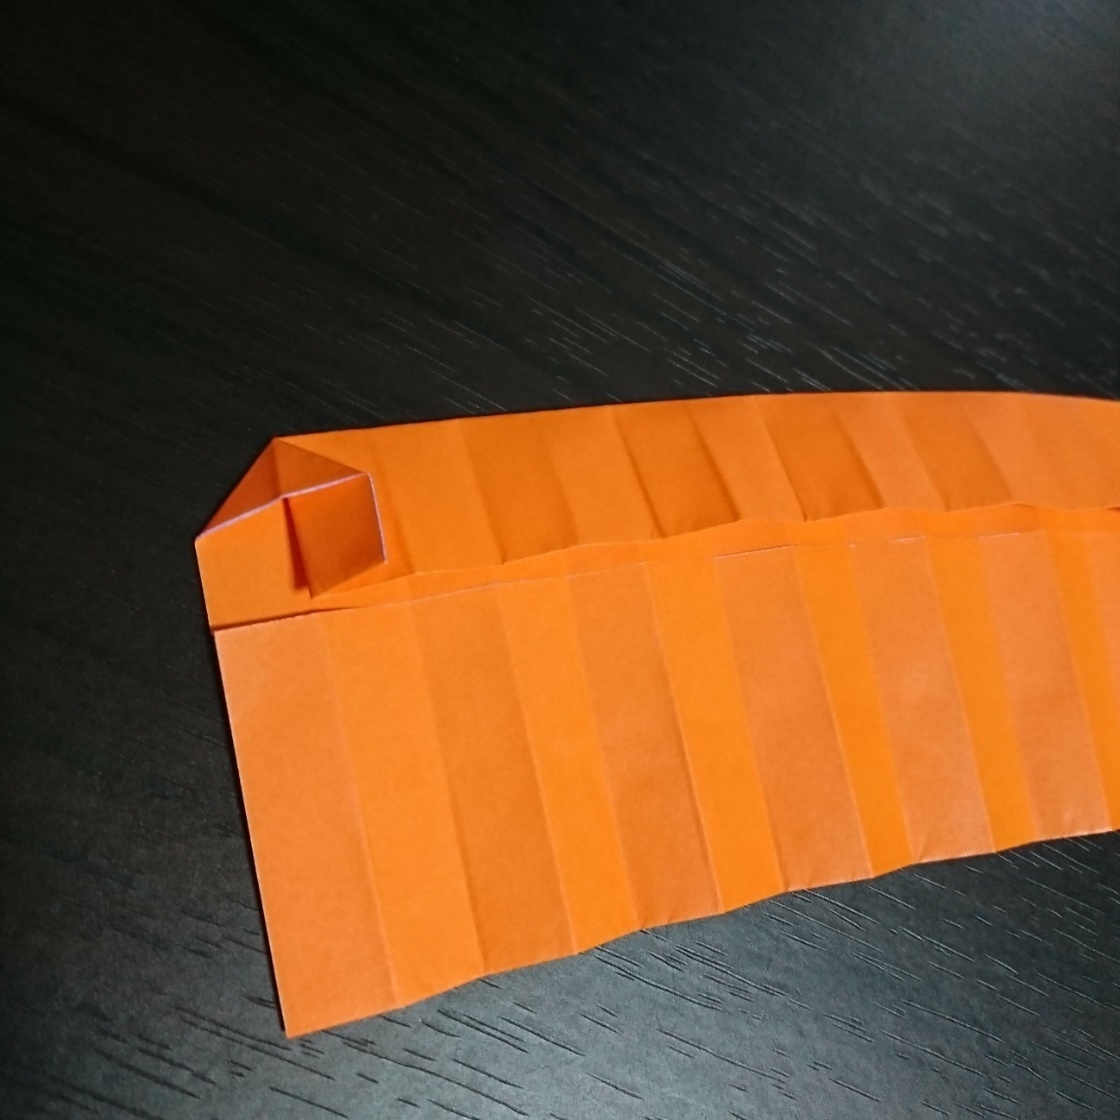 製作途中の折り紙